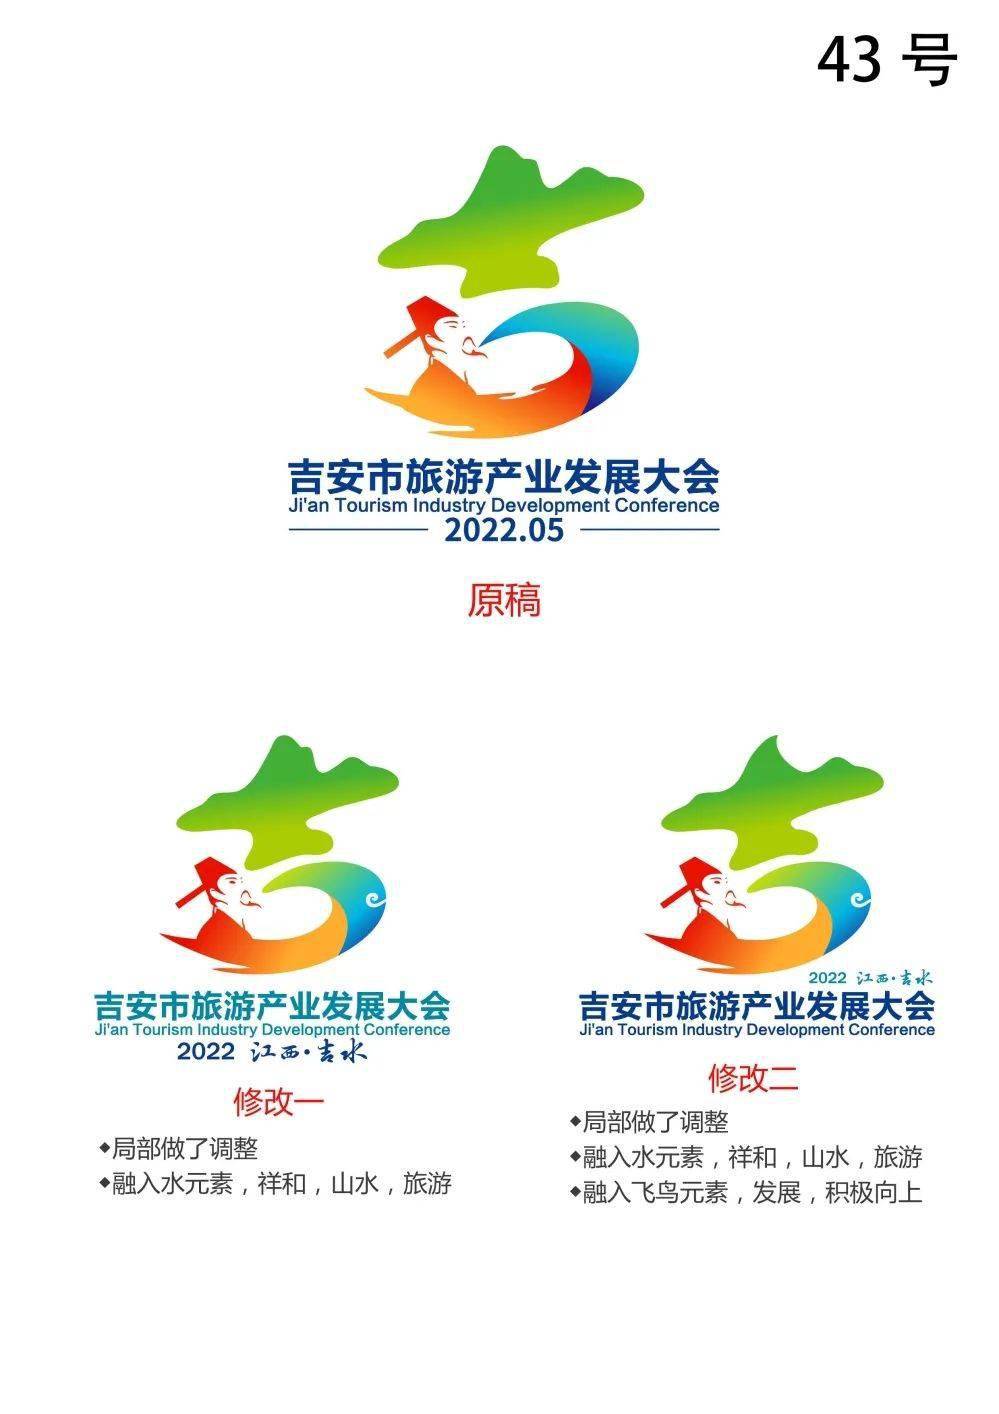 2022年吉安市旅游产业发展大会logo吉祥物惊艳亮相